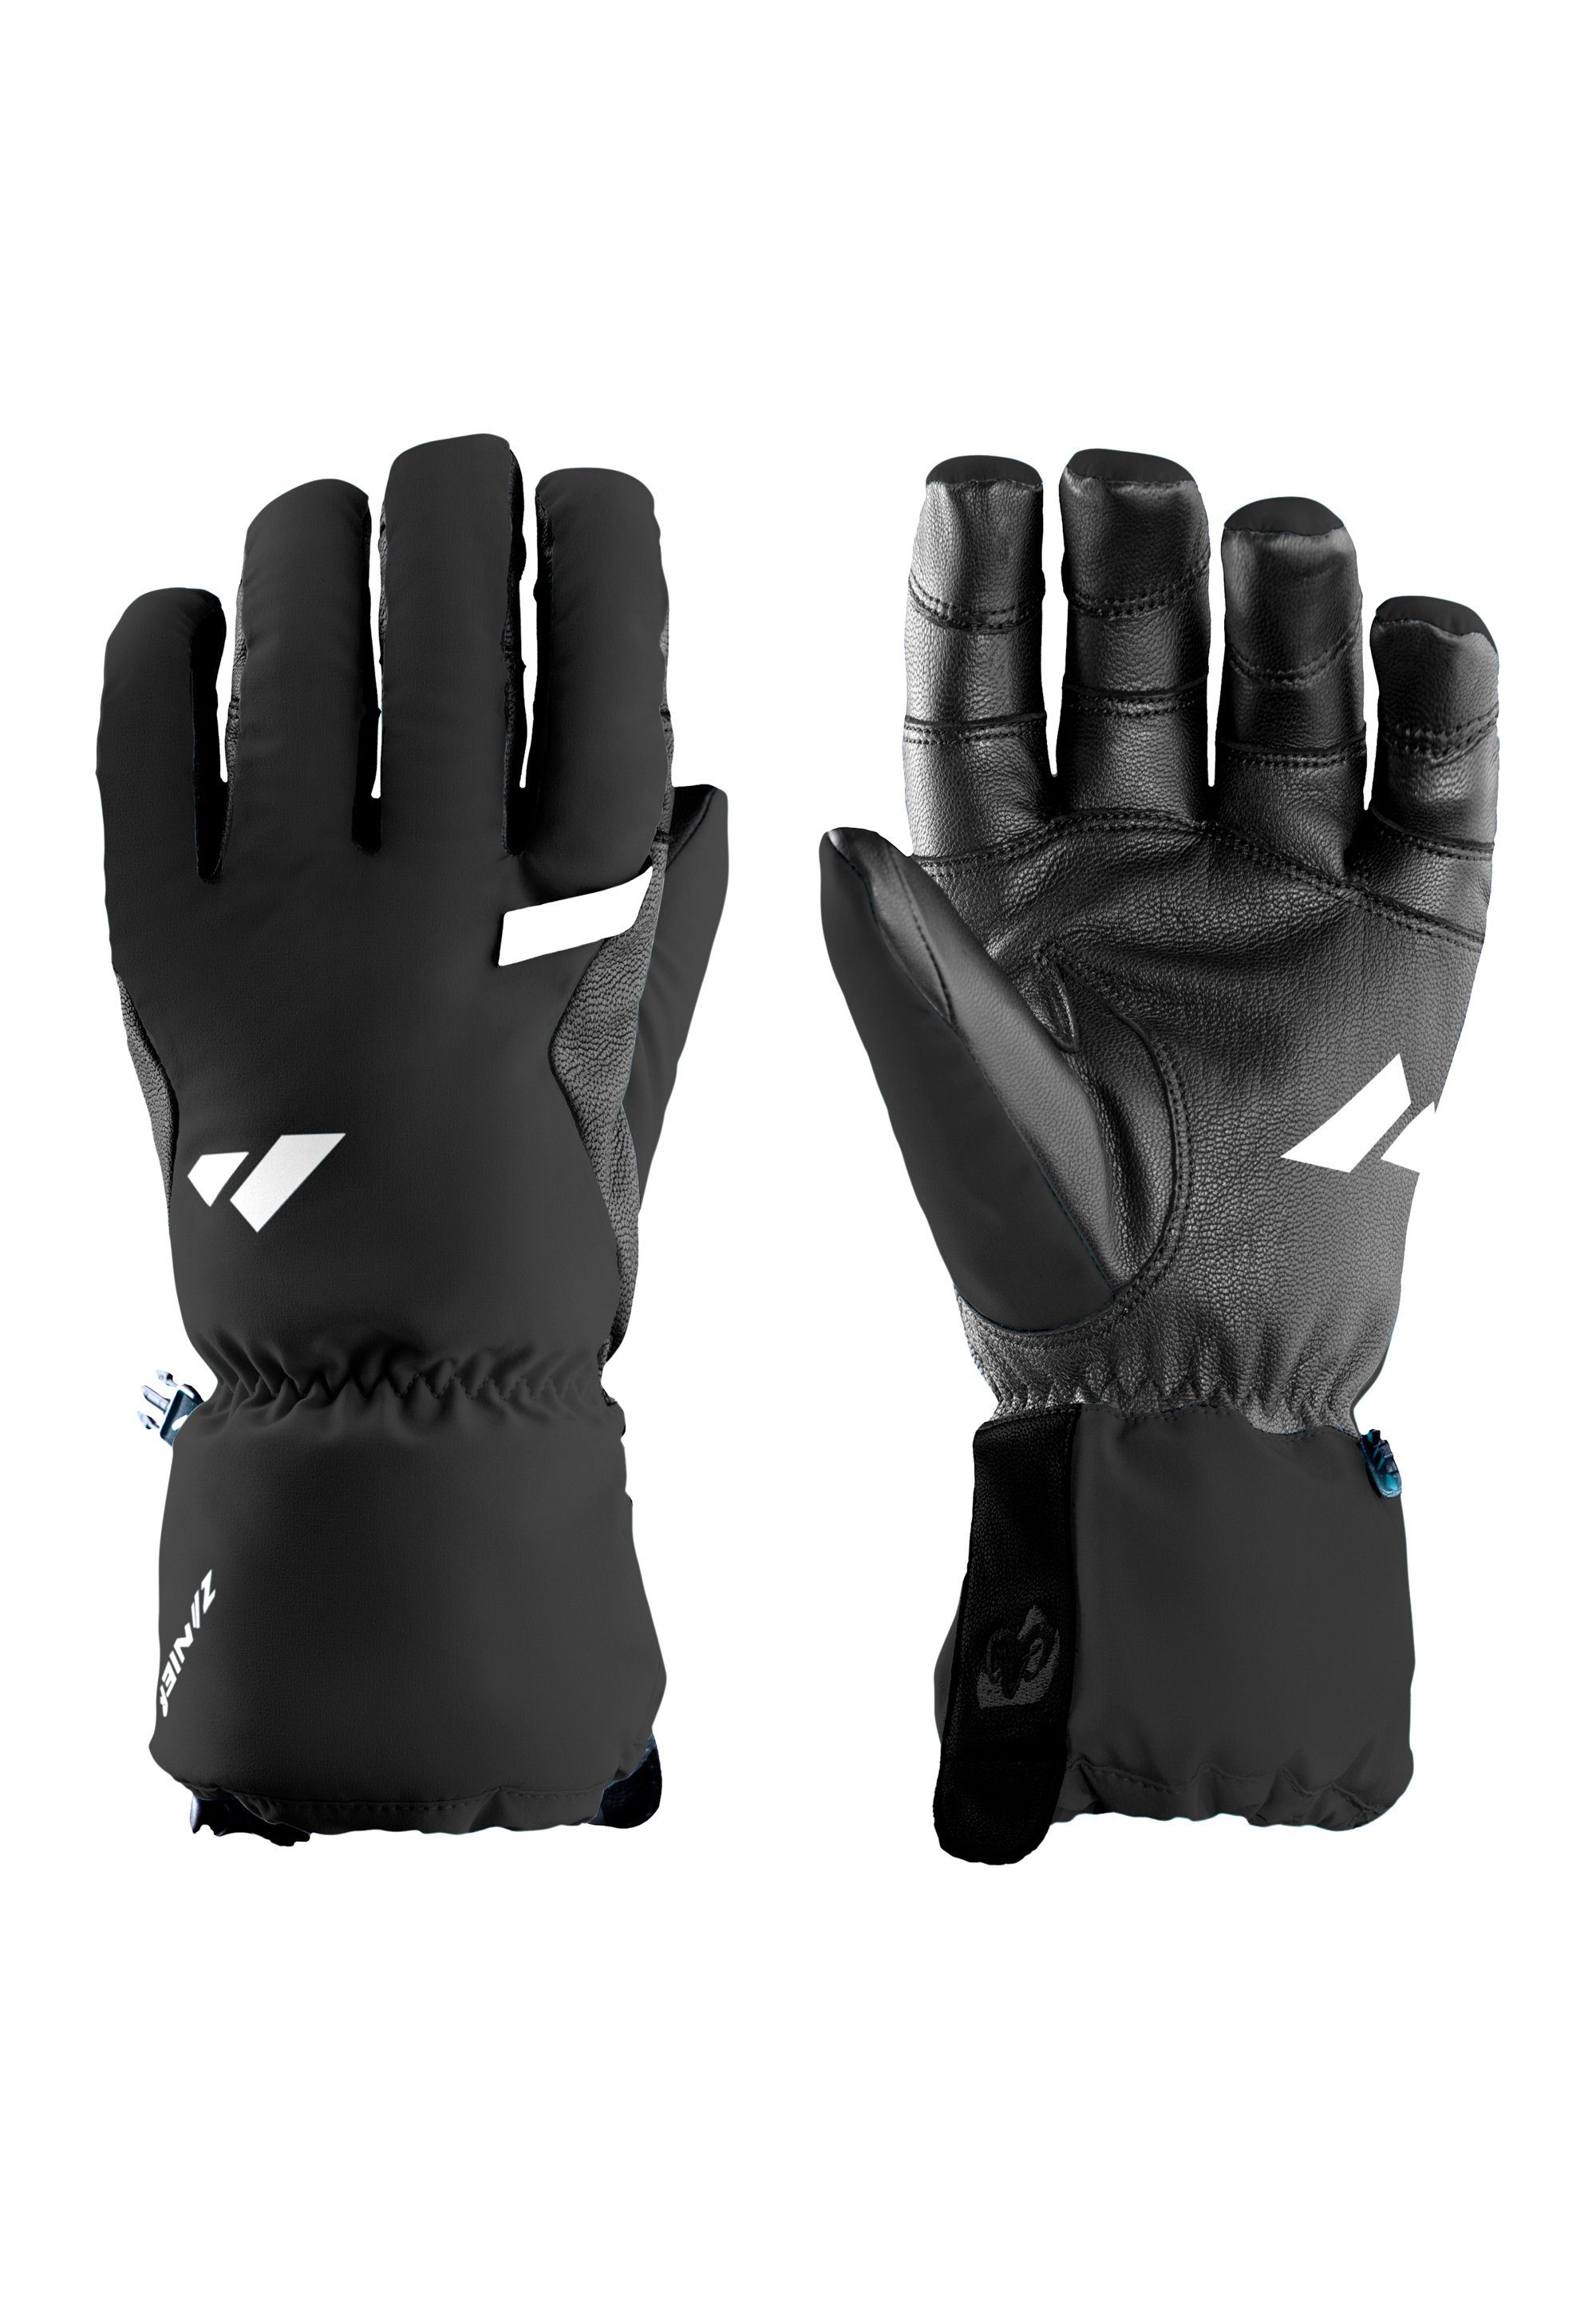 We focus WILDSPITZE.TW on black Zanier gloves Multisporthandschuhe